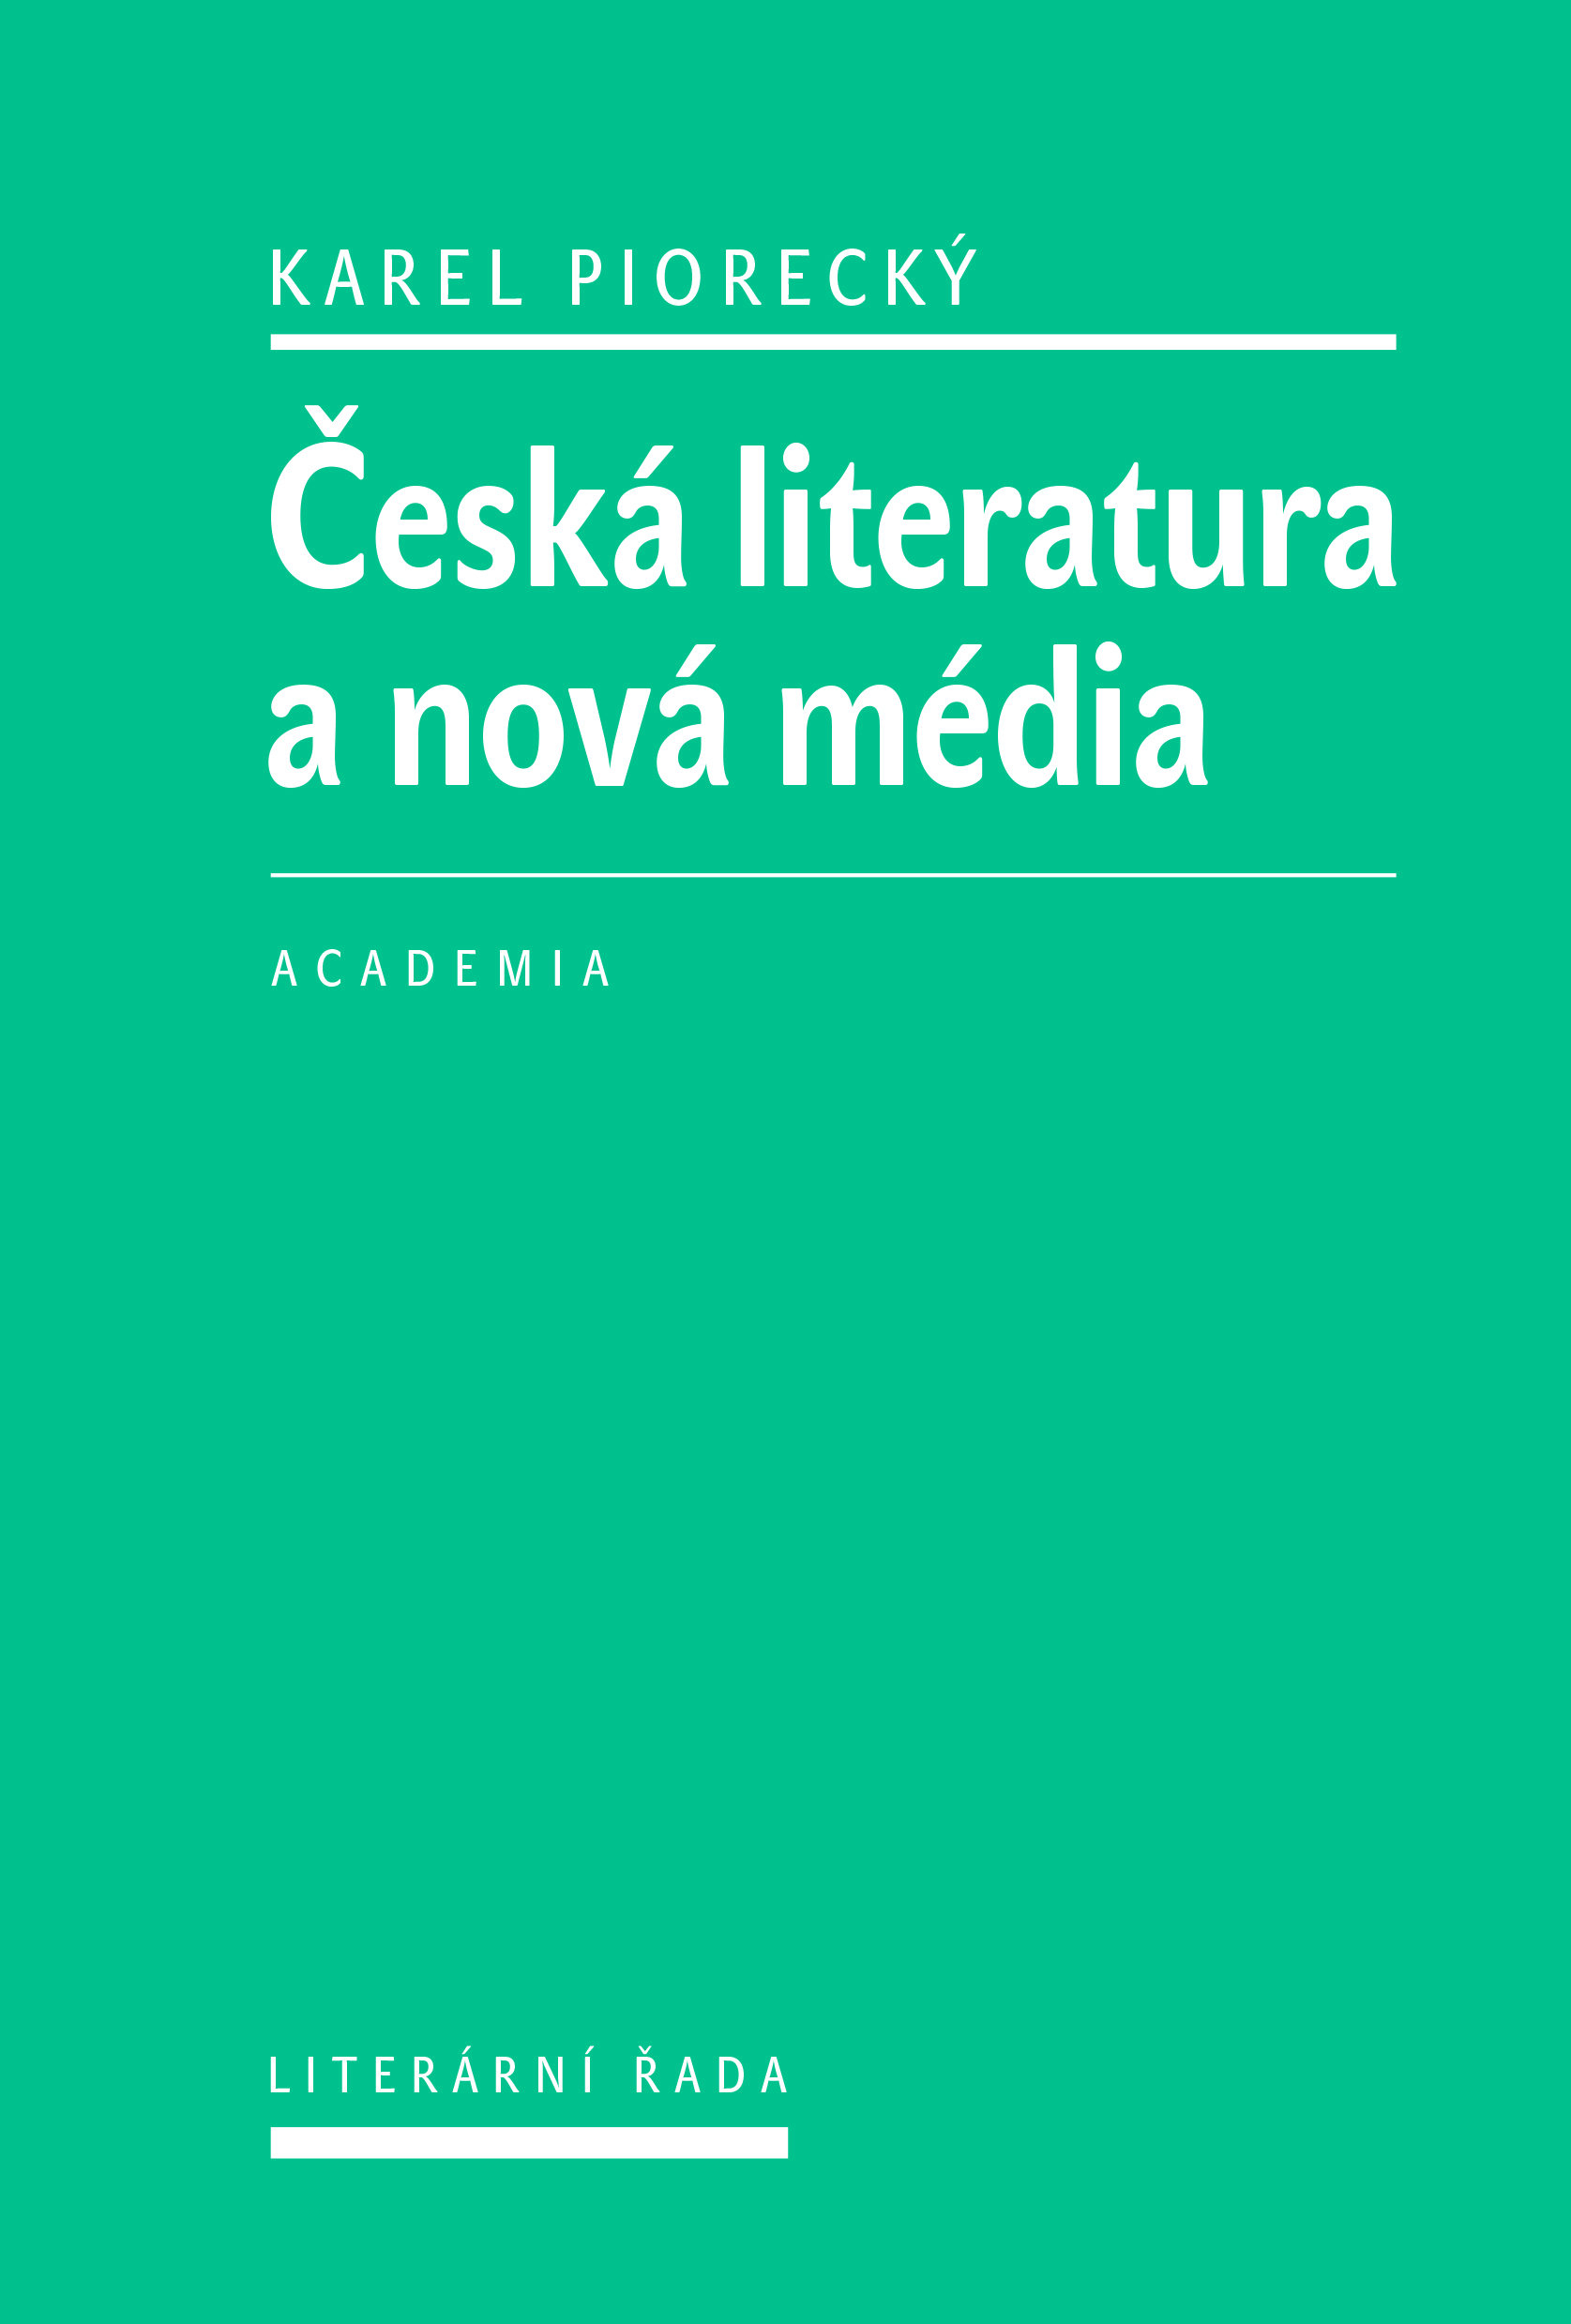 academia ceska literatura a nova media